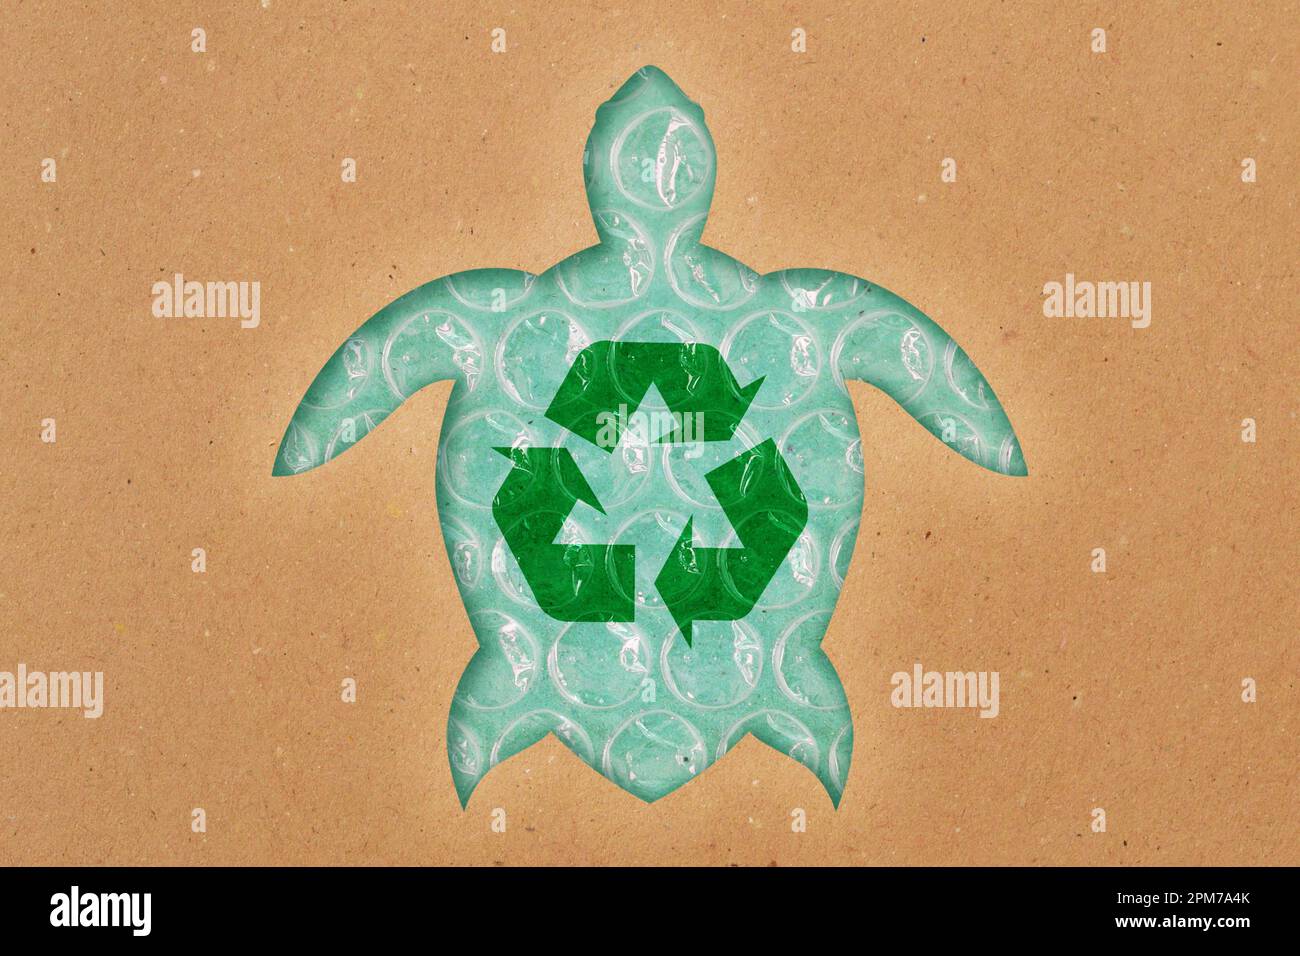 Silhouette de tortue de mer en papier recyclé avec symbole de recyclage sur film à bulles en plastique - concept d'écologie et de pollution des océans Banque D'Images